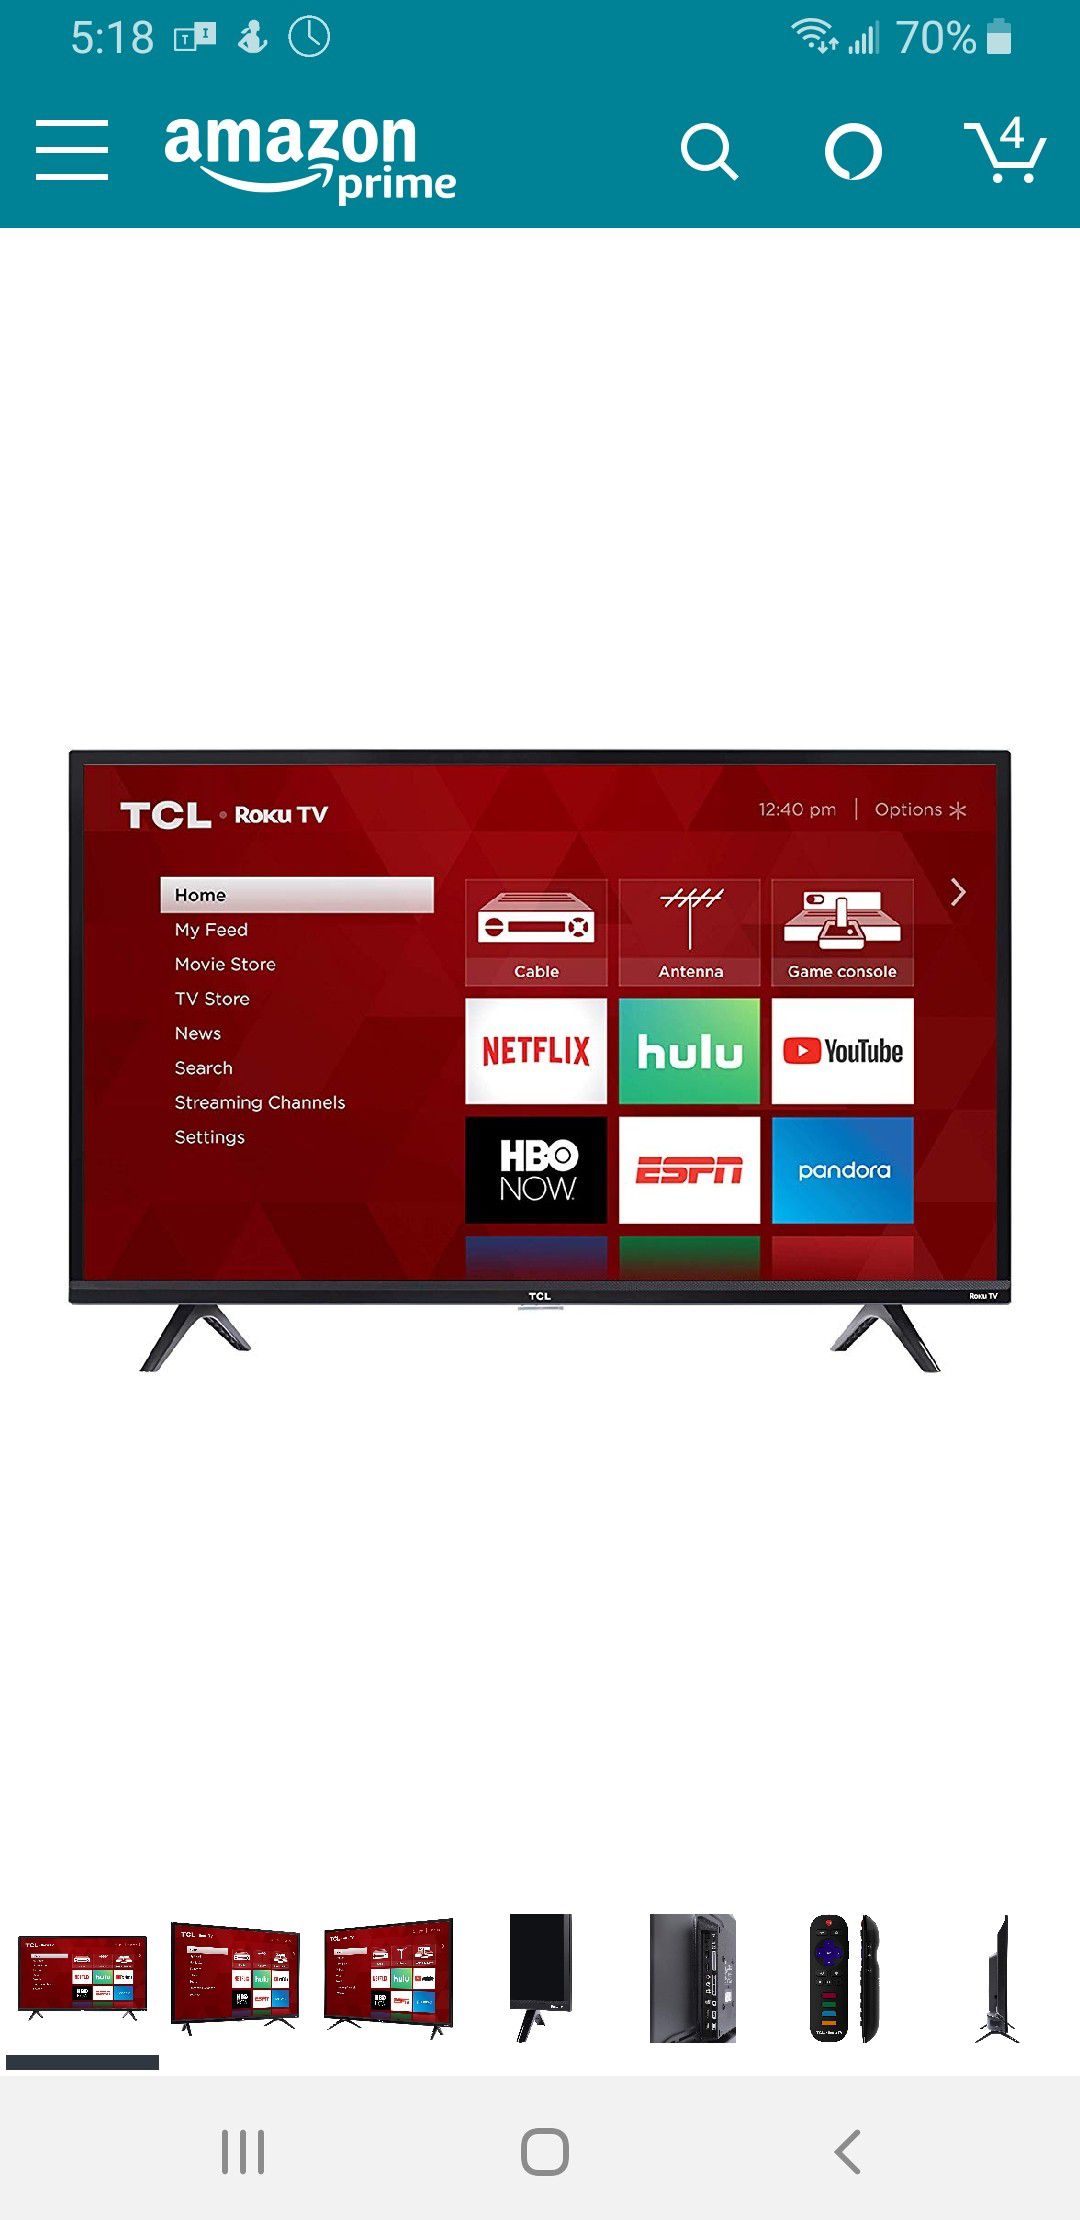 32" TCL Roku smart TV 720p